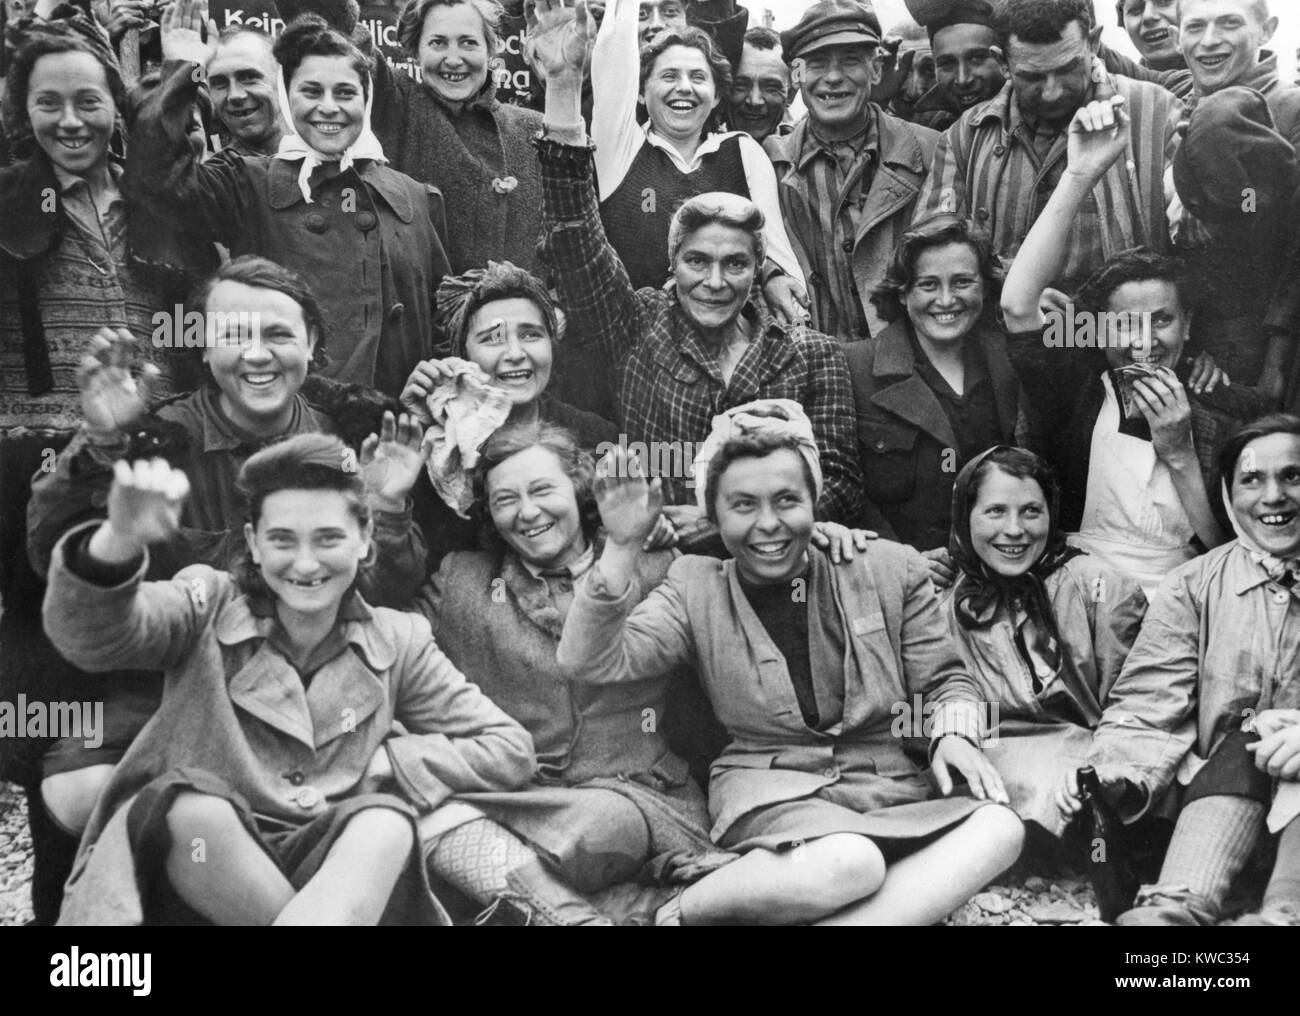 Befreiten gefangenen Frauen im Konzentrationslager Dachau wave und Beifall für eine Gruppe portrait. Foto wurde von US-Signal Corps Fotografen, Ca. April 29, 1945, 2.Weltkrieg (BSLOC 2015 13 22) Stockfoto